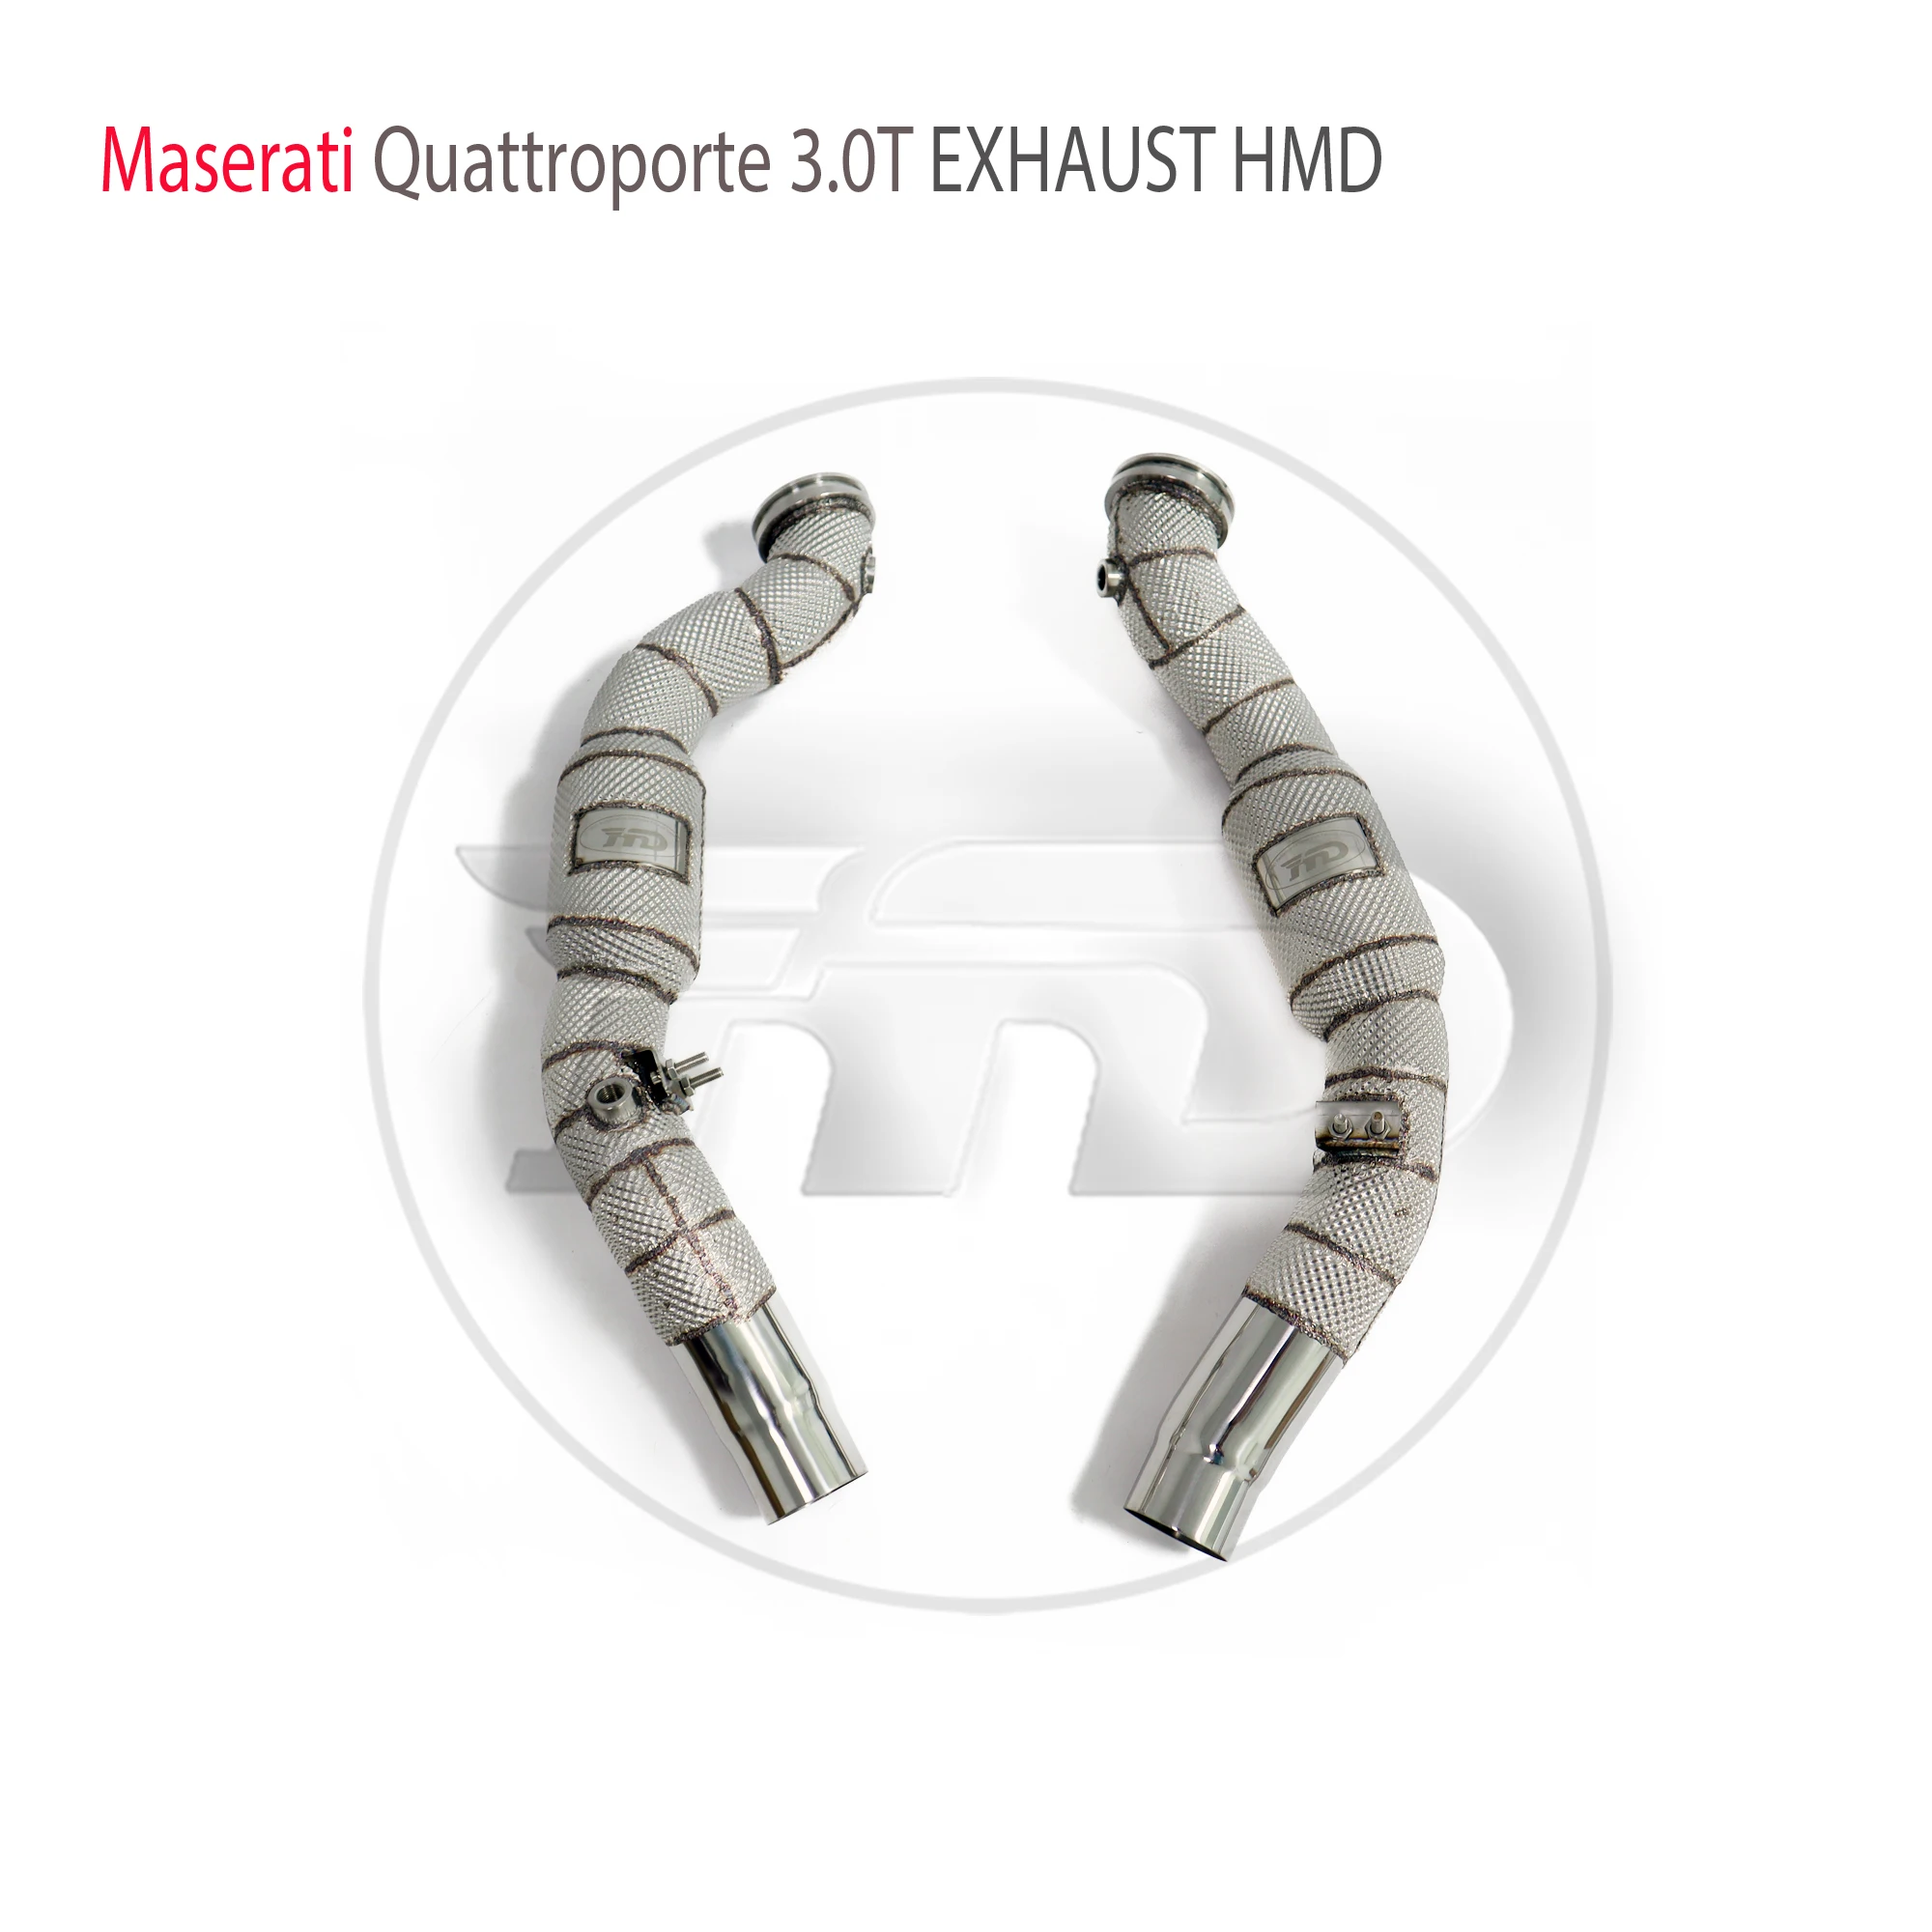 

Выхлопная система HMD, высокопроизводительная потоковая труба для Maserati Quattroporte 3,0 T с каталитическим конвертером